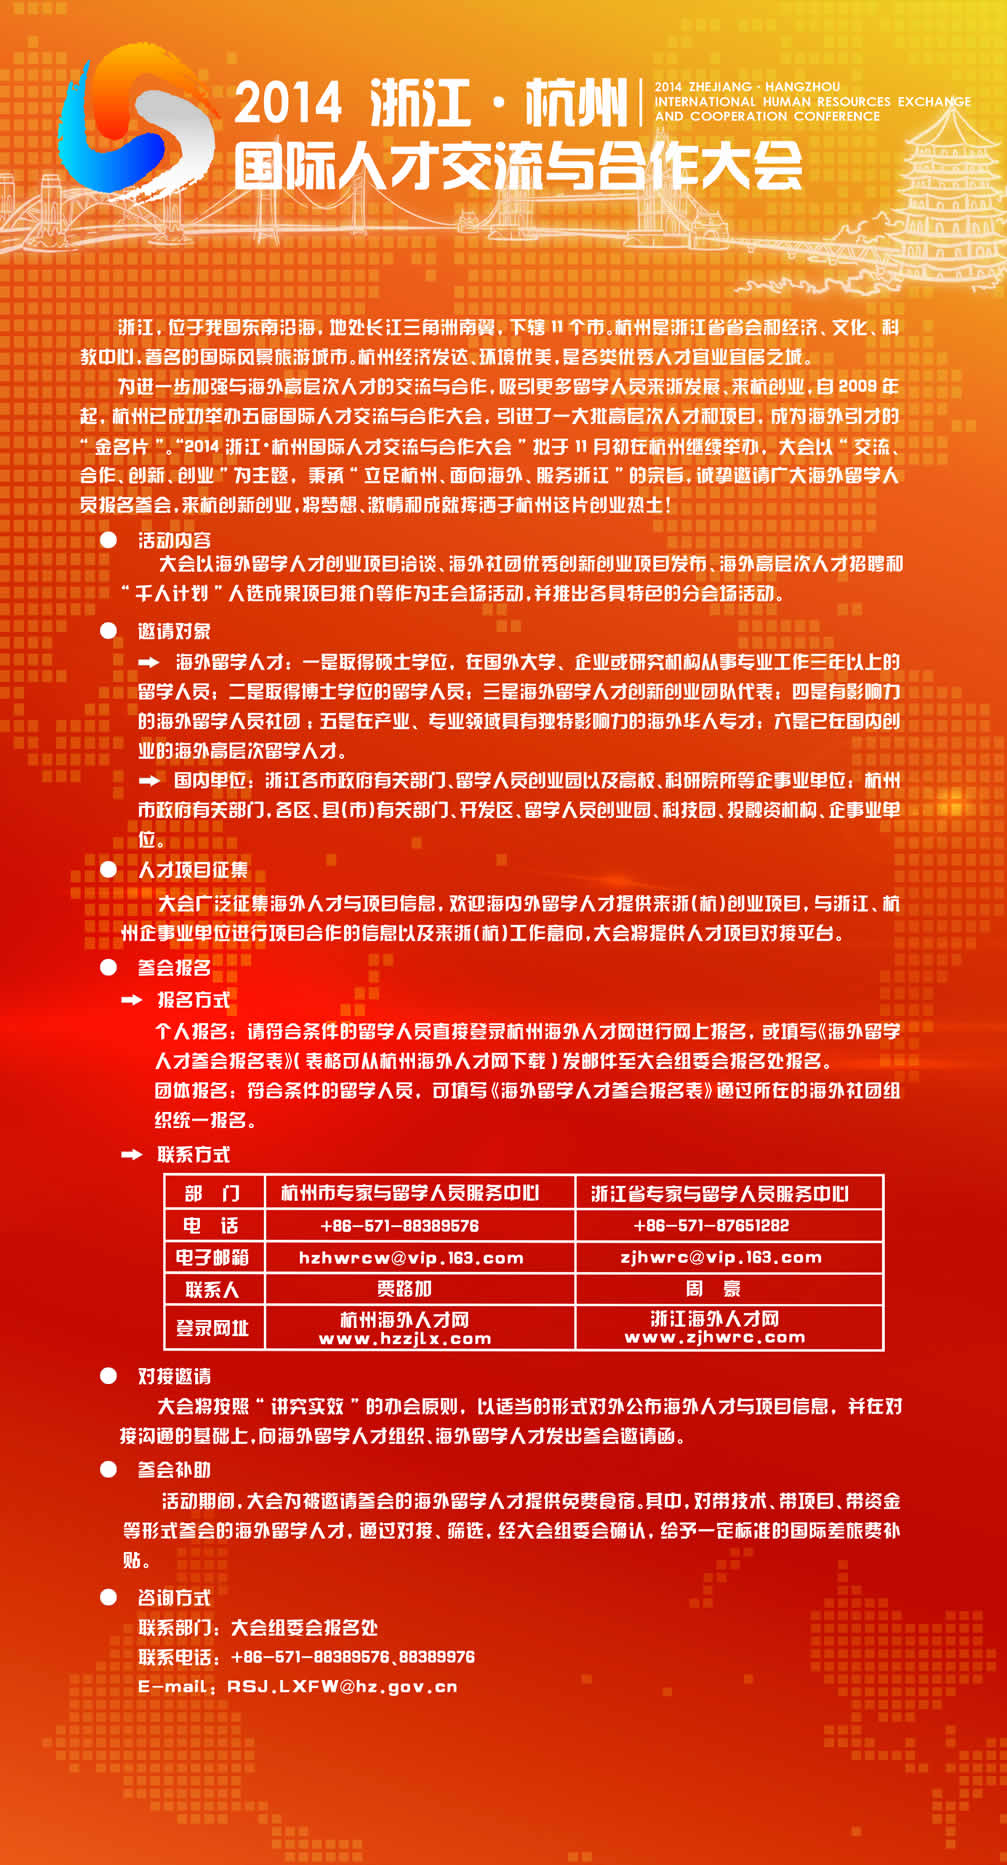 2014浙江杭州国际人才交流与合作大会需求项目征集的通知